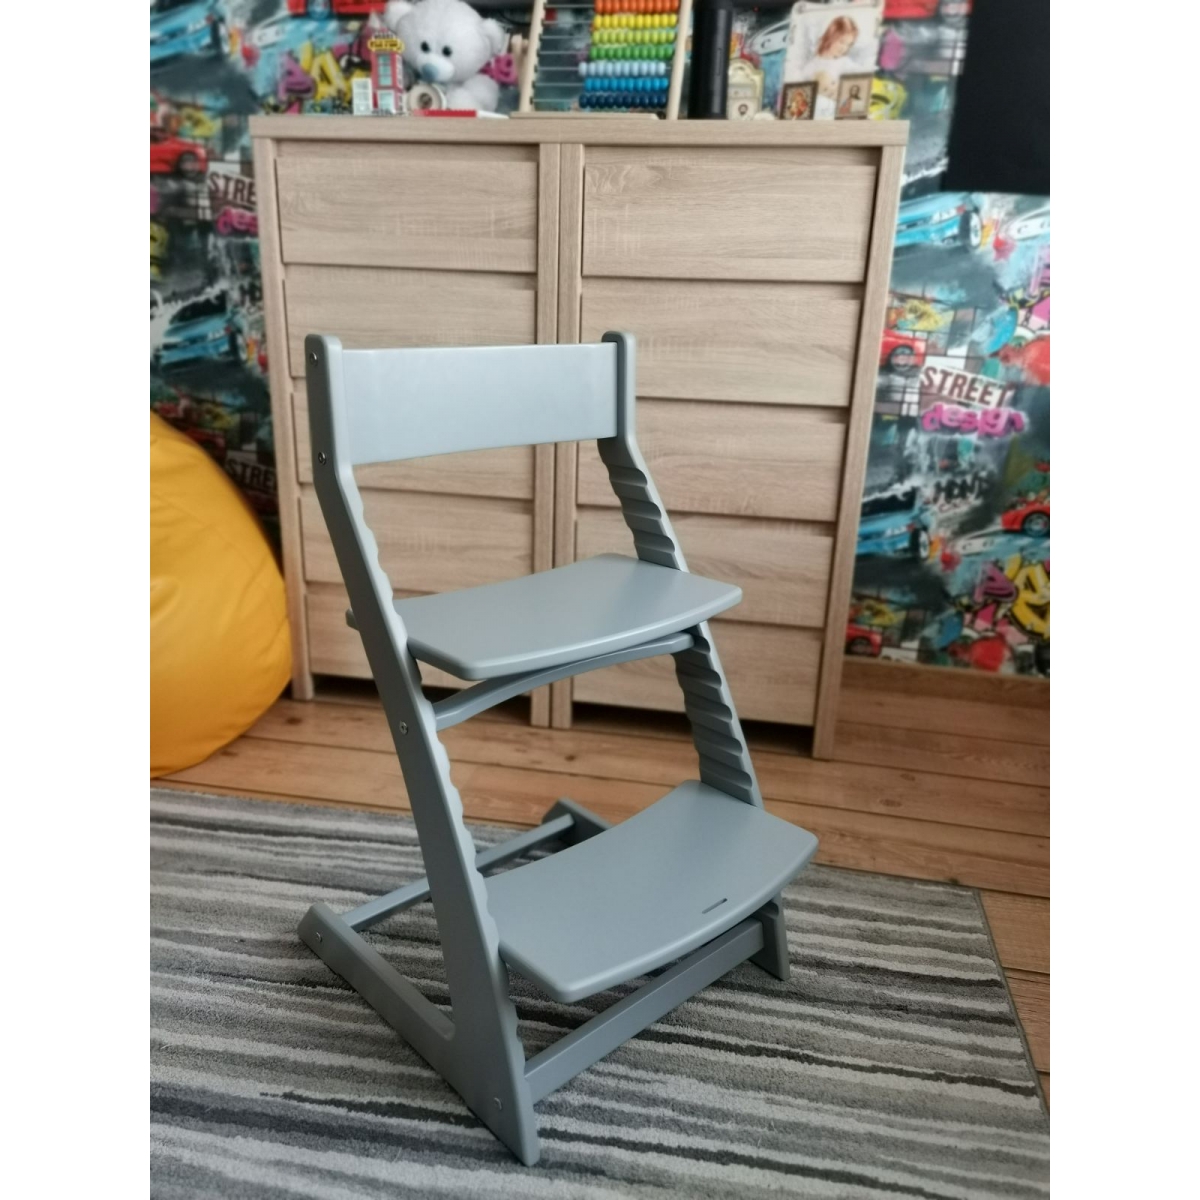 Детский регулируемый растущий стул «ВАСИЛЁК» Slim ВН-21Д (серый)